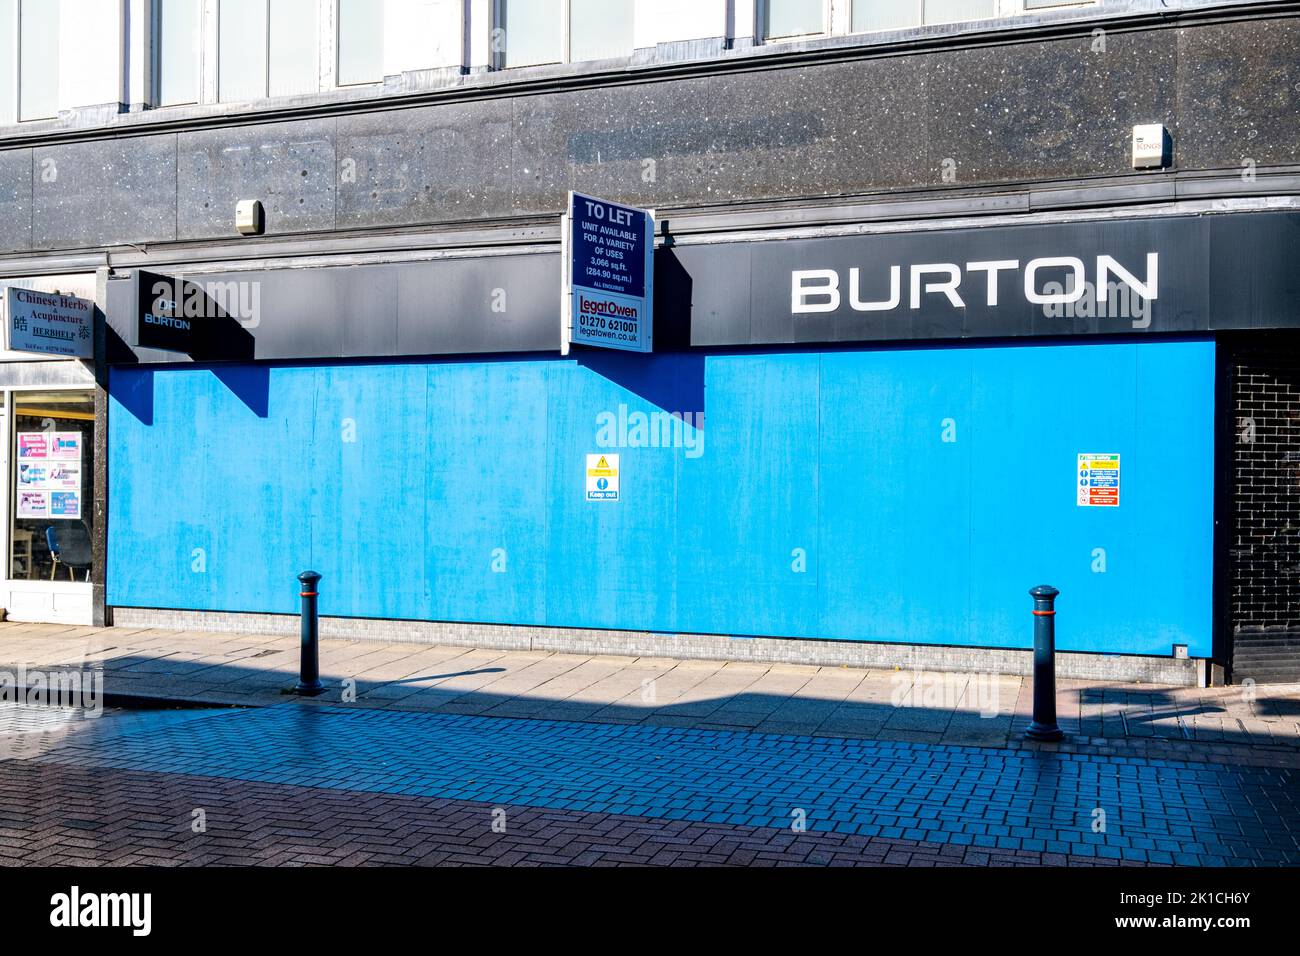 La tienda Burton Fashion, cerrada y abordada en el centro de la ciudad de Crewe Cheshire, Reino Unido Foto de stock